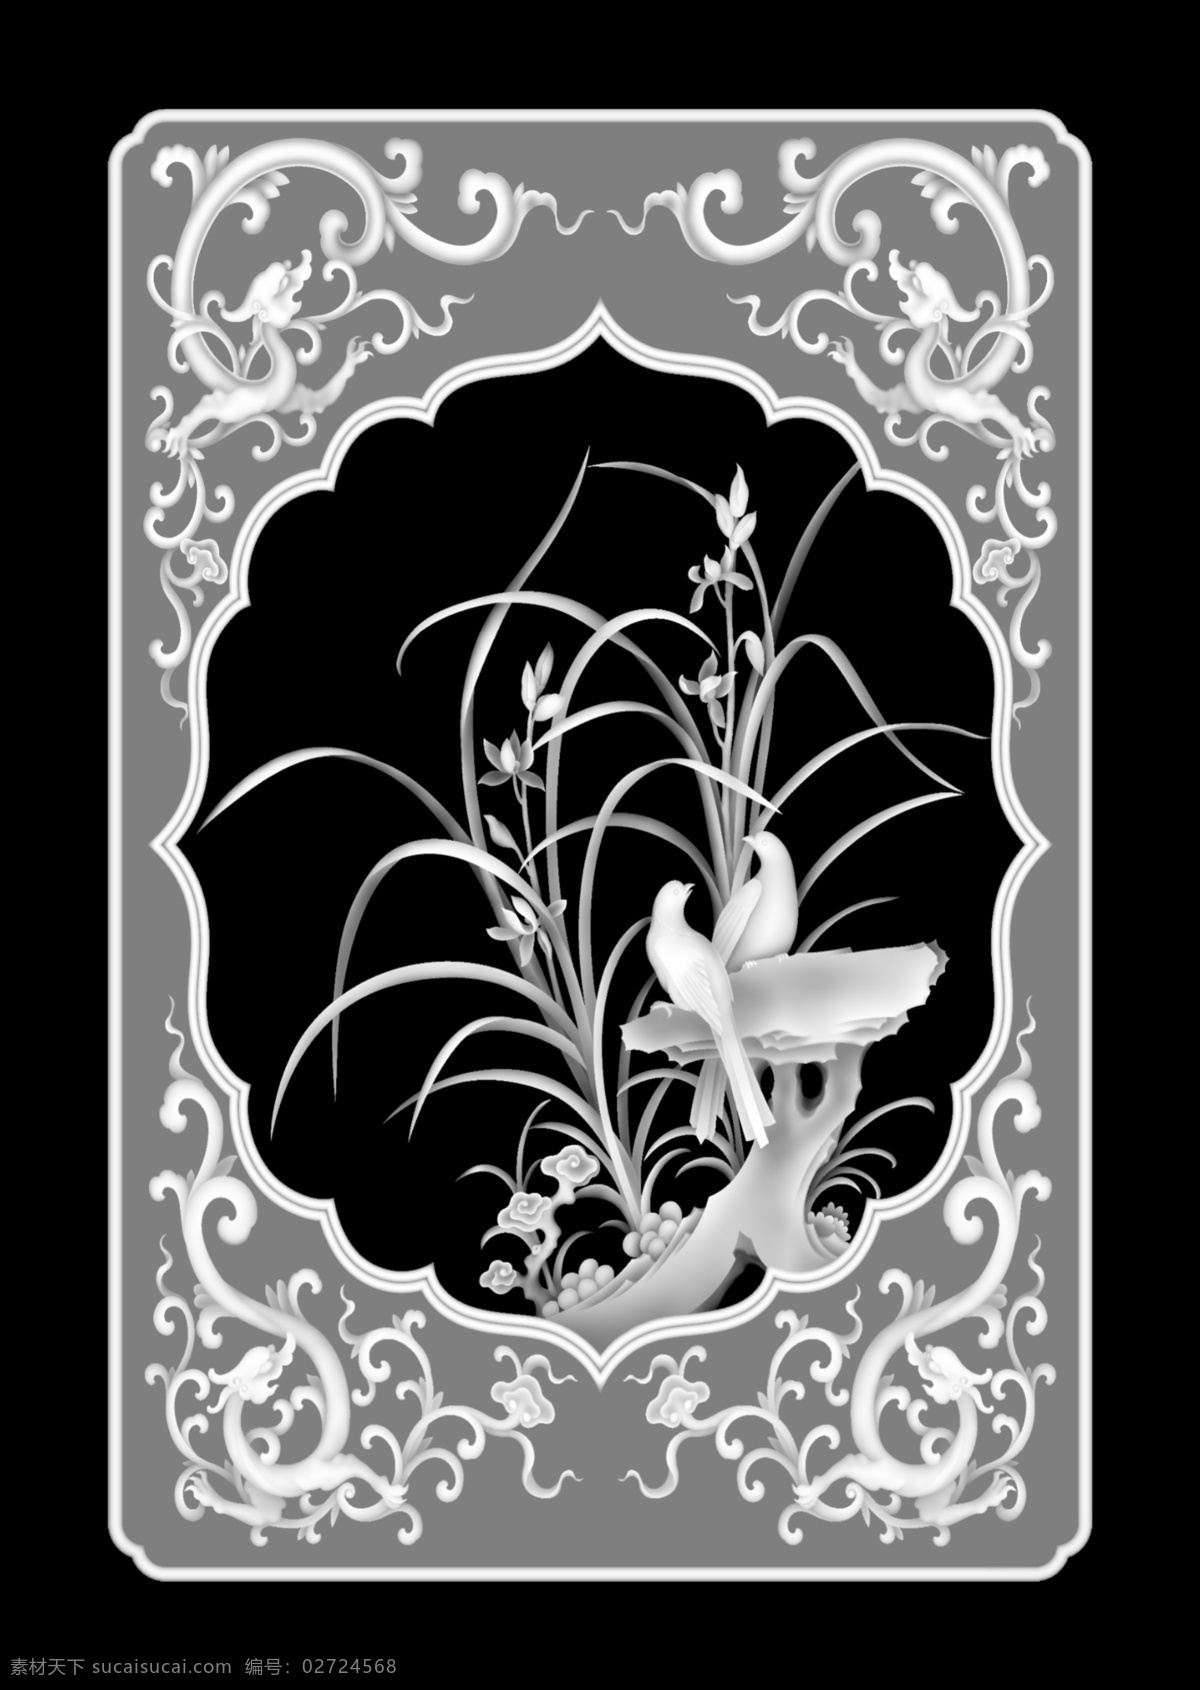 兰花 灰度 图 传统文化 浮雕 花卉 灰度图 文化艺术 植物 装饰素材 印章 雕刻 图案